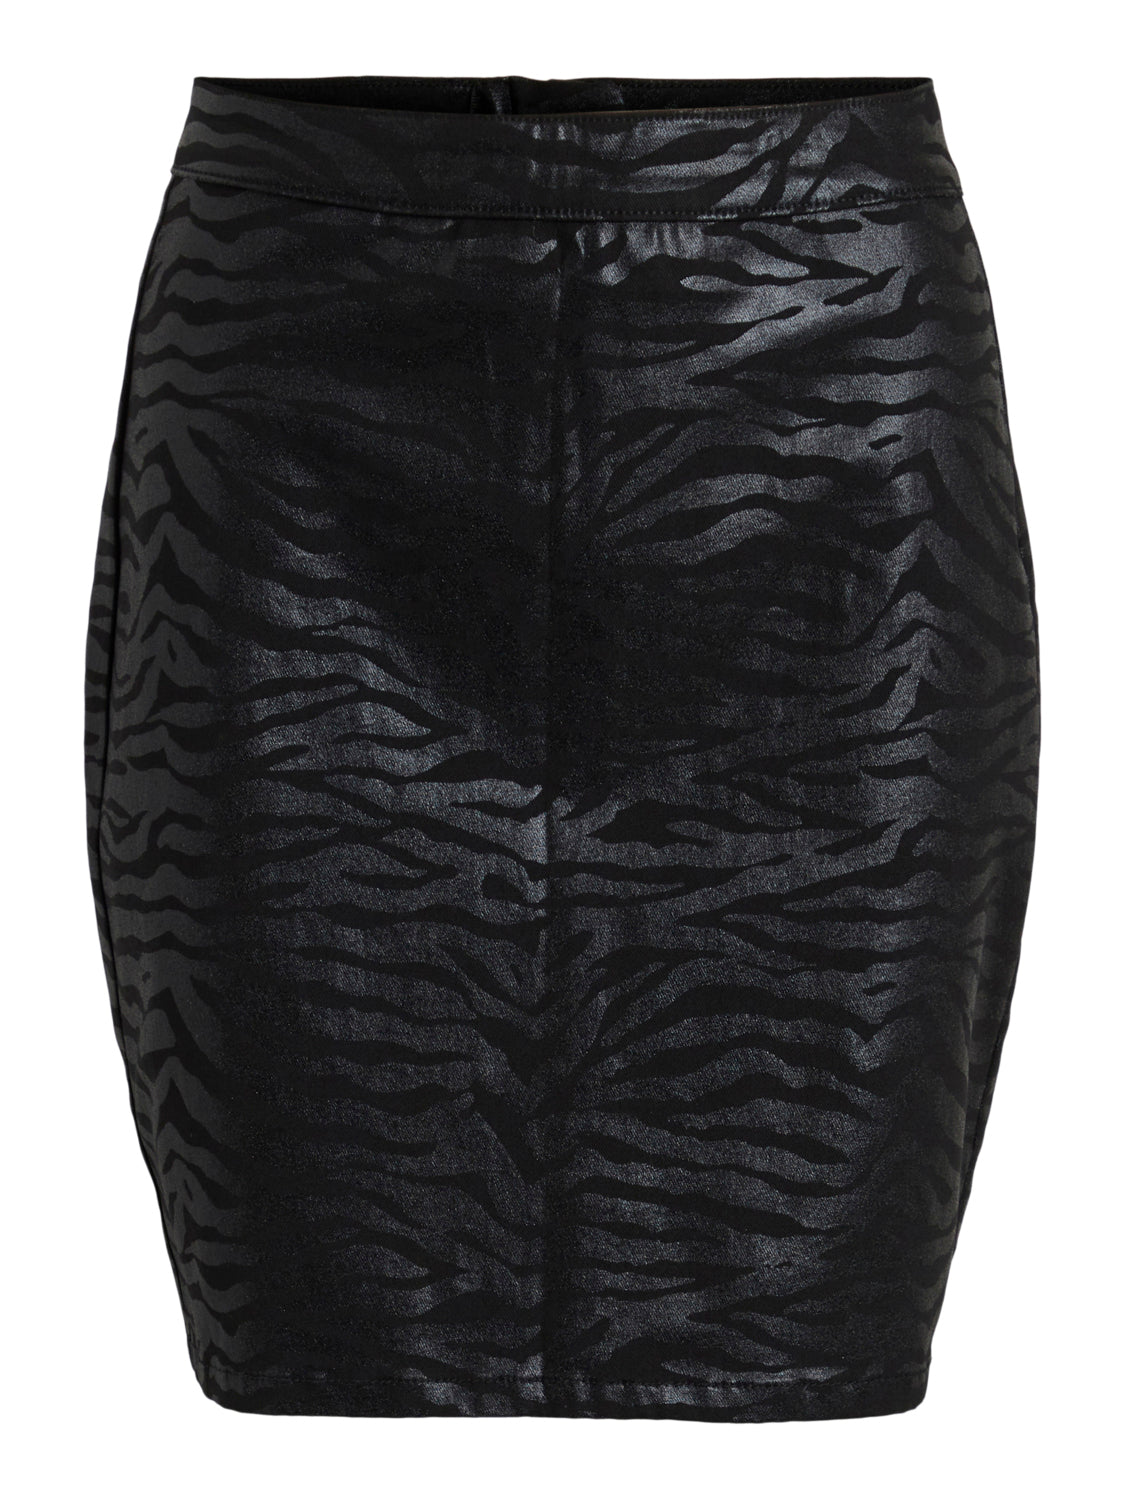 VISIB Skirt - Black